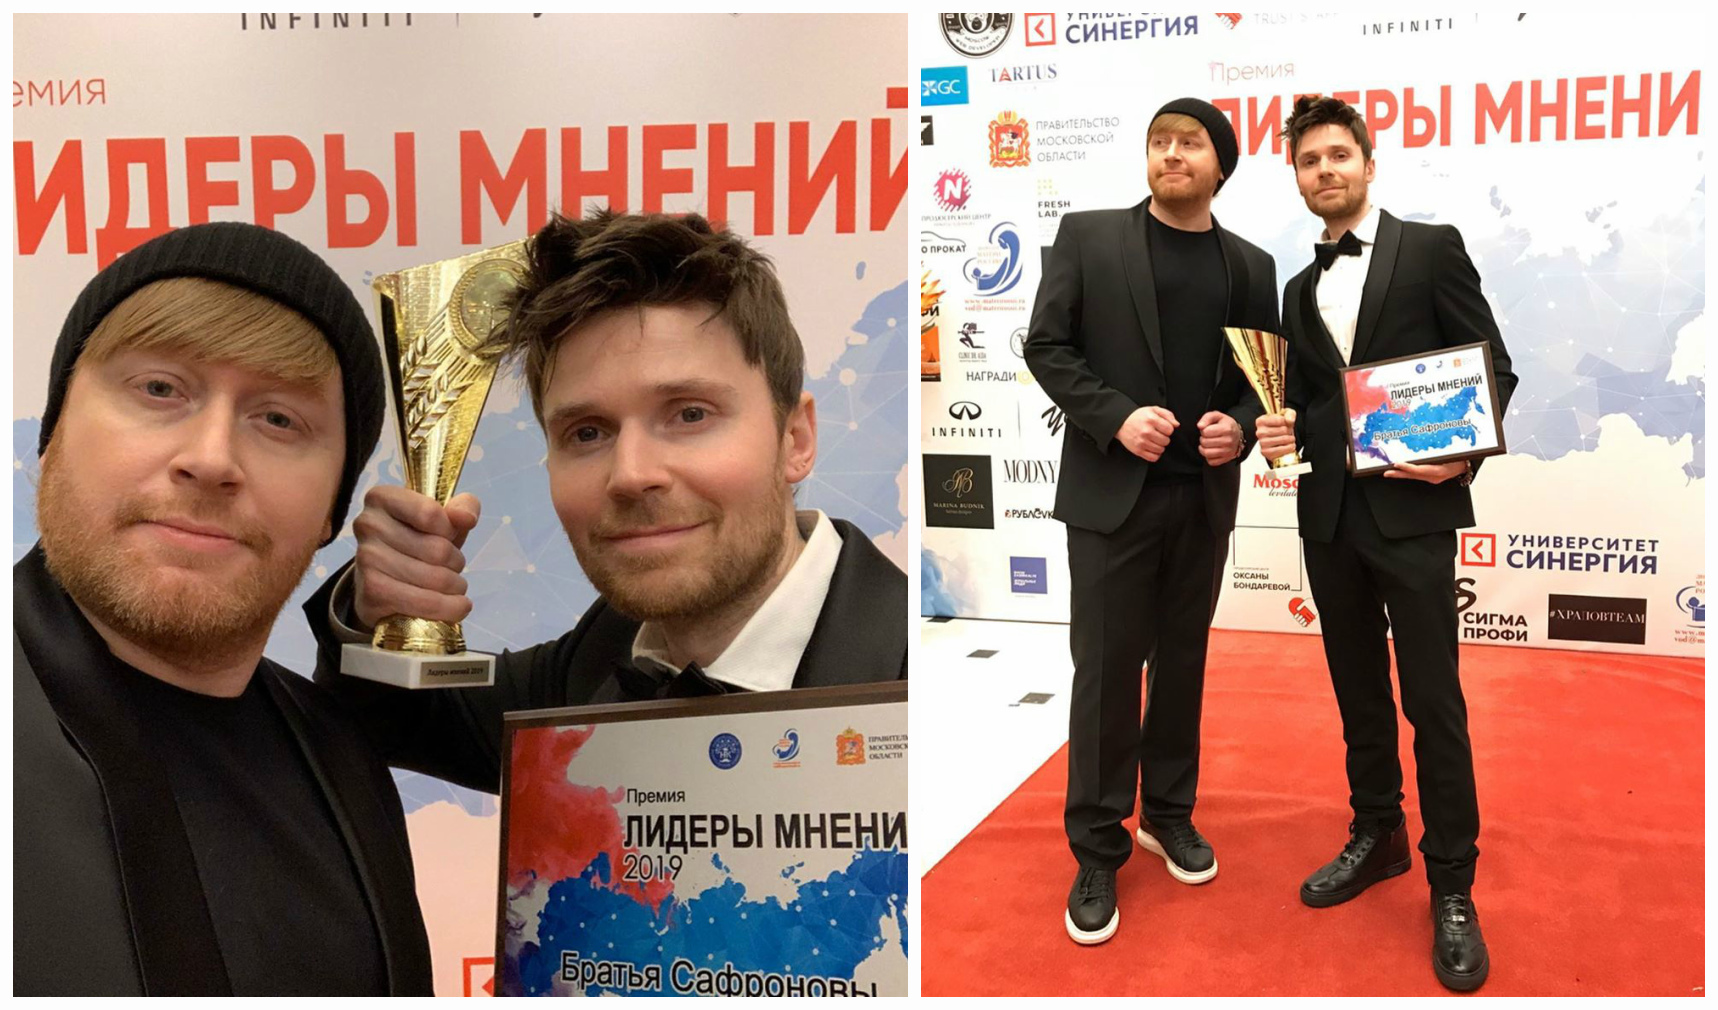 Братья Сафроновы получили премию "Лидеры мнений - 2019"